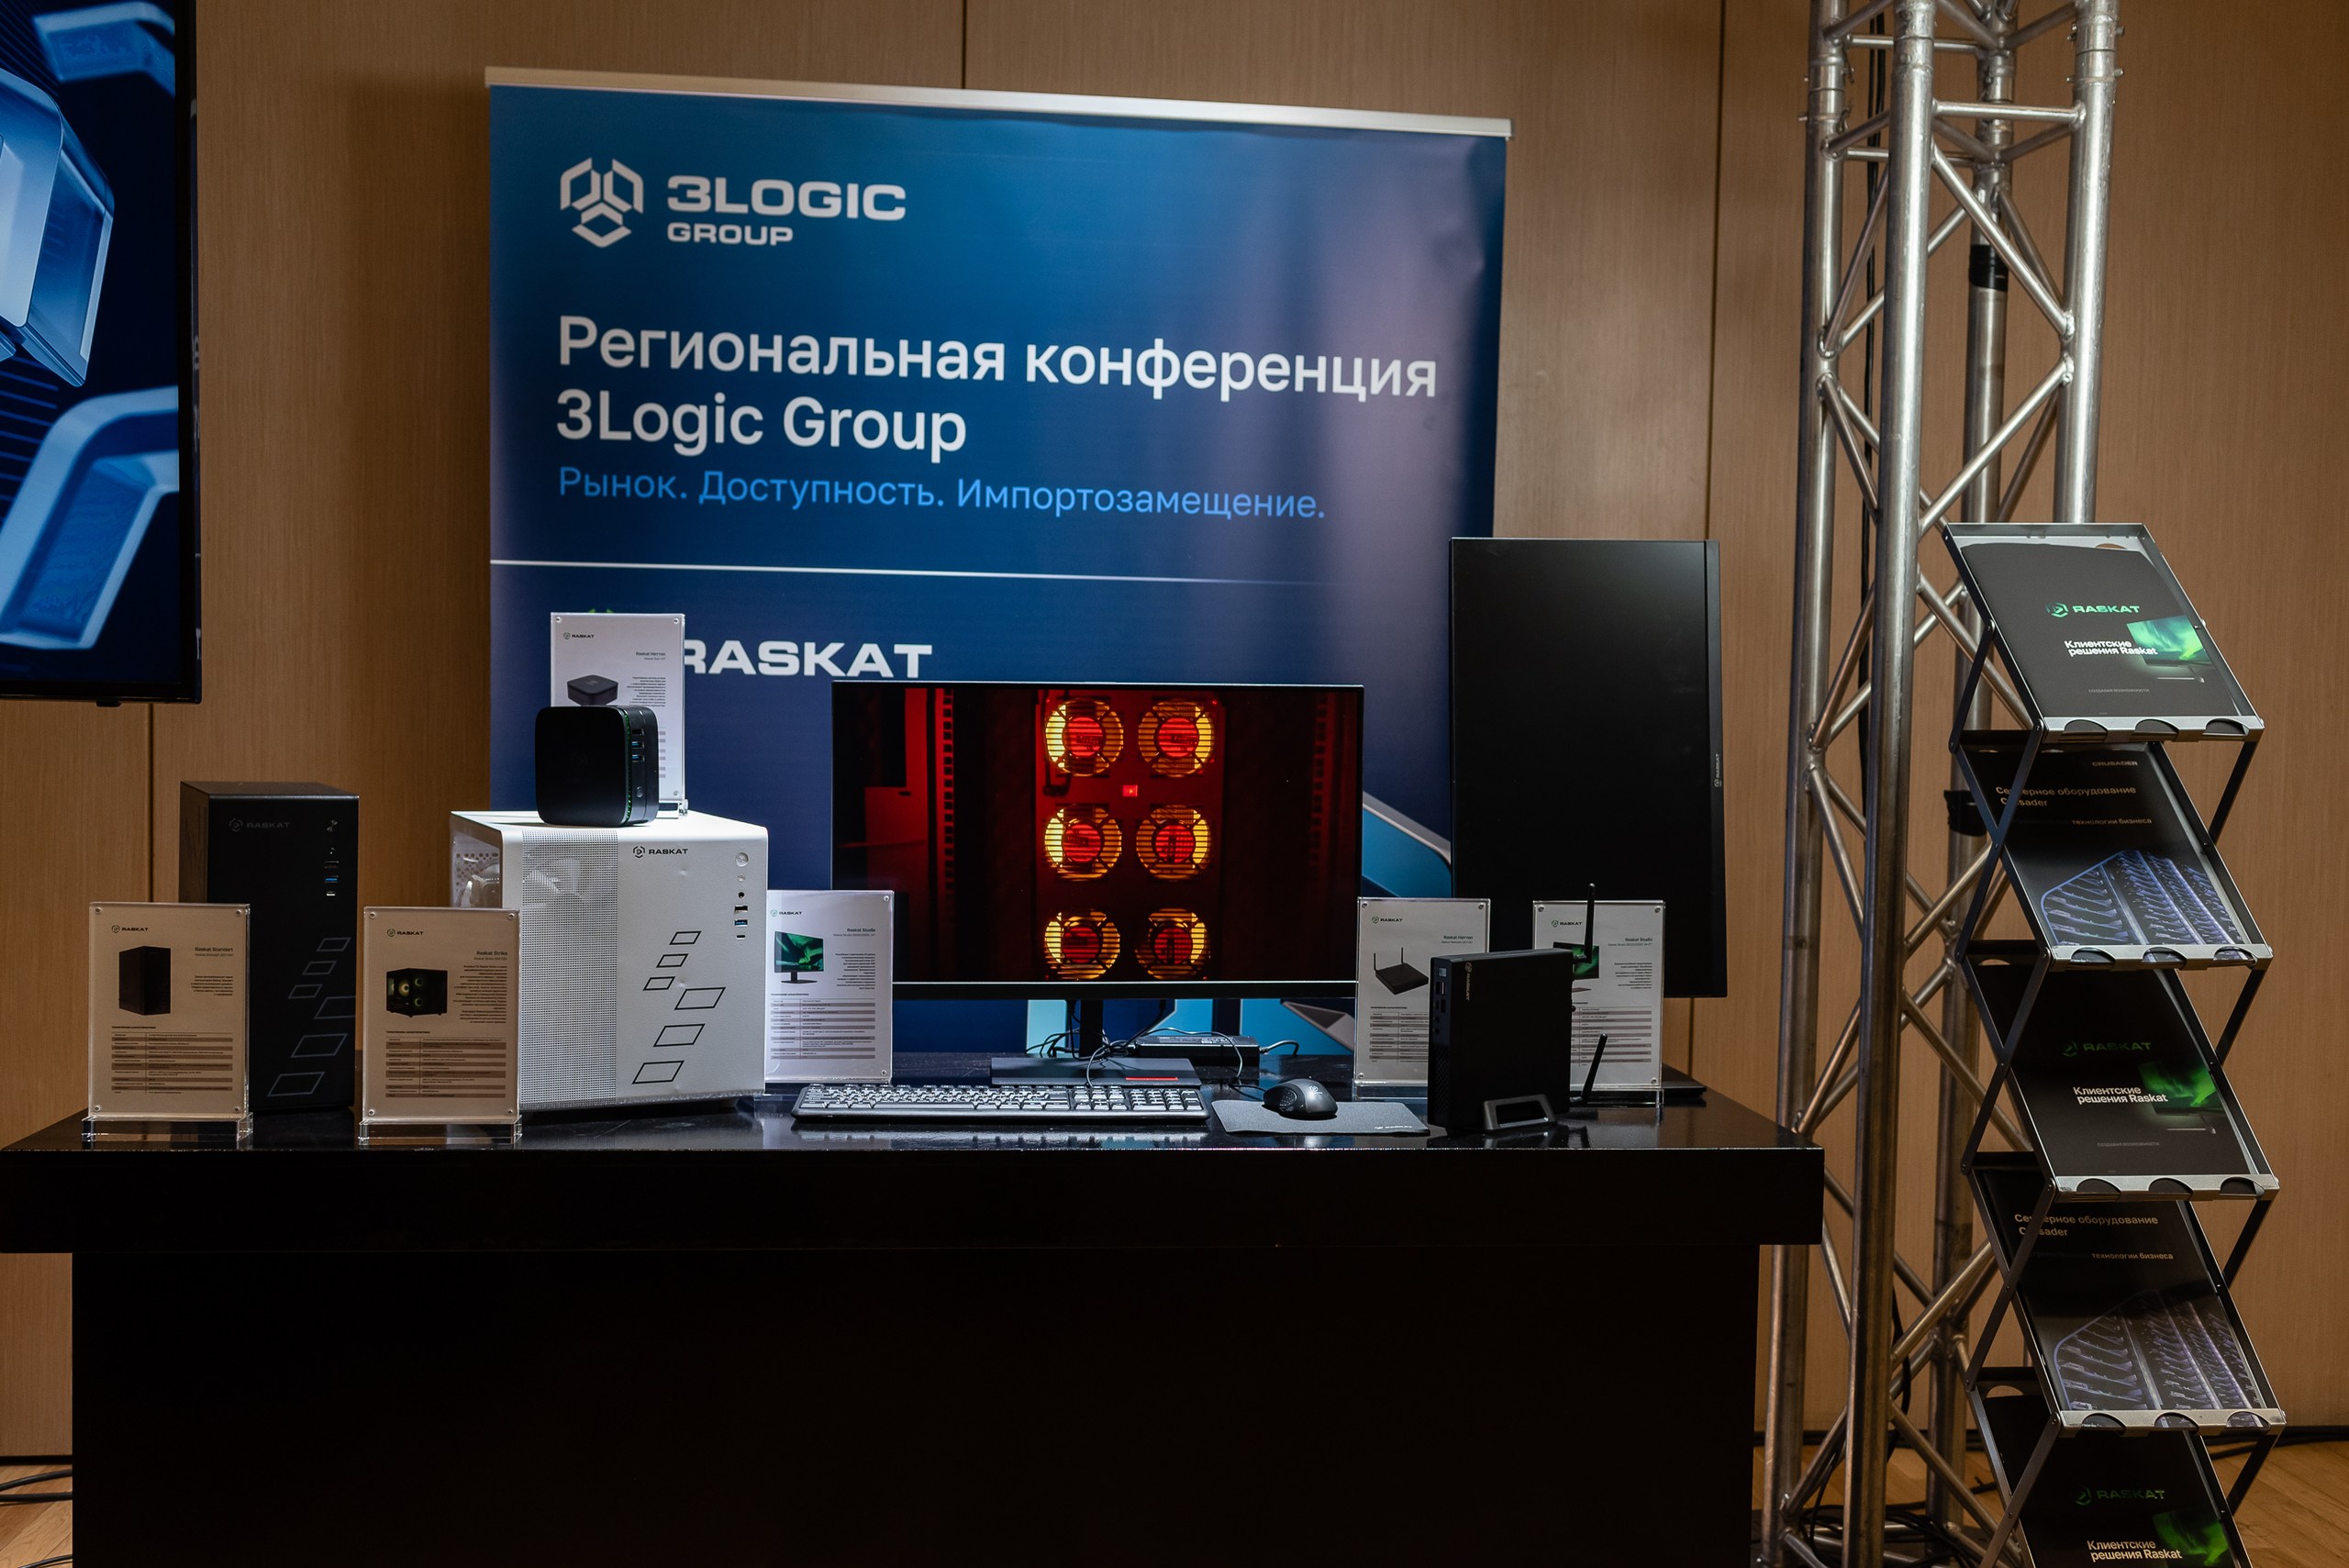 Екатеринбург открыл серию конференций для партнеров 3Logic Group по всей стране